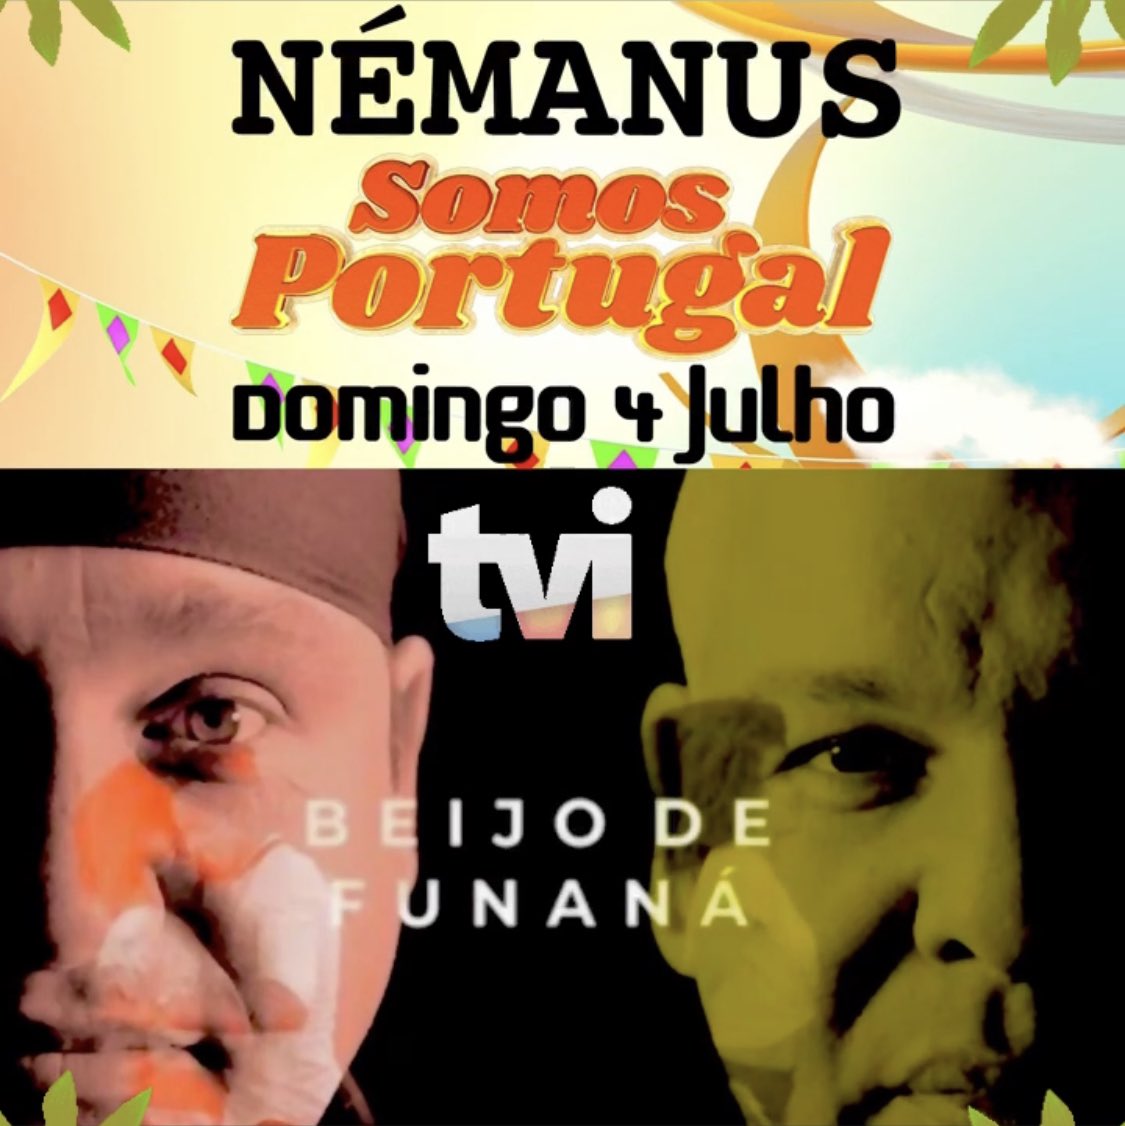 *ALERTA:*
**NÉMANUS**
***SOMOS PORTUGAL-TVI***
****DOMINGO 4 JULHO****
*****Não percas…***** 
#nemanus #nemanusoficial #beijodefunana #somosportugal #tvi #tvioficial #paisreal #musicaportuguesa #tv #sucesso #hit #verao2021